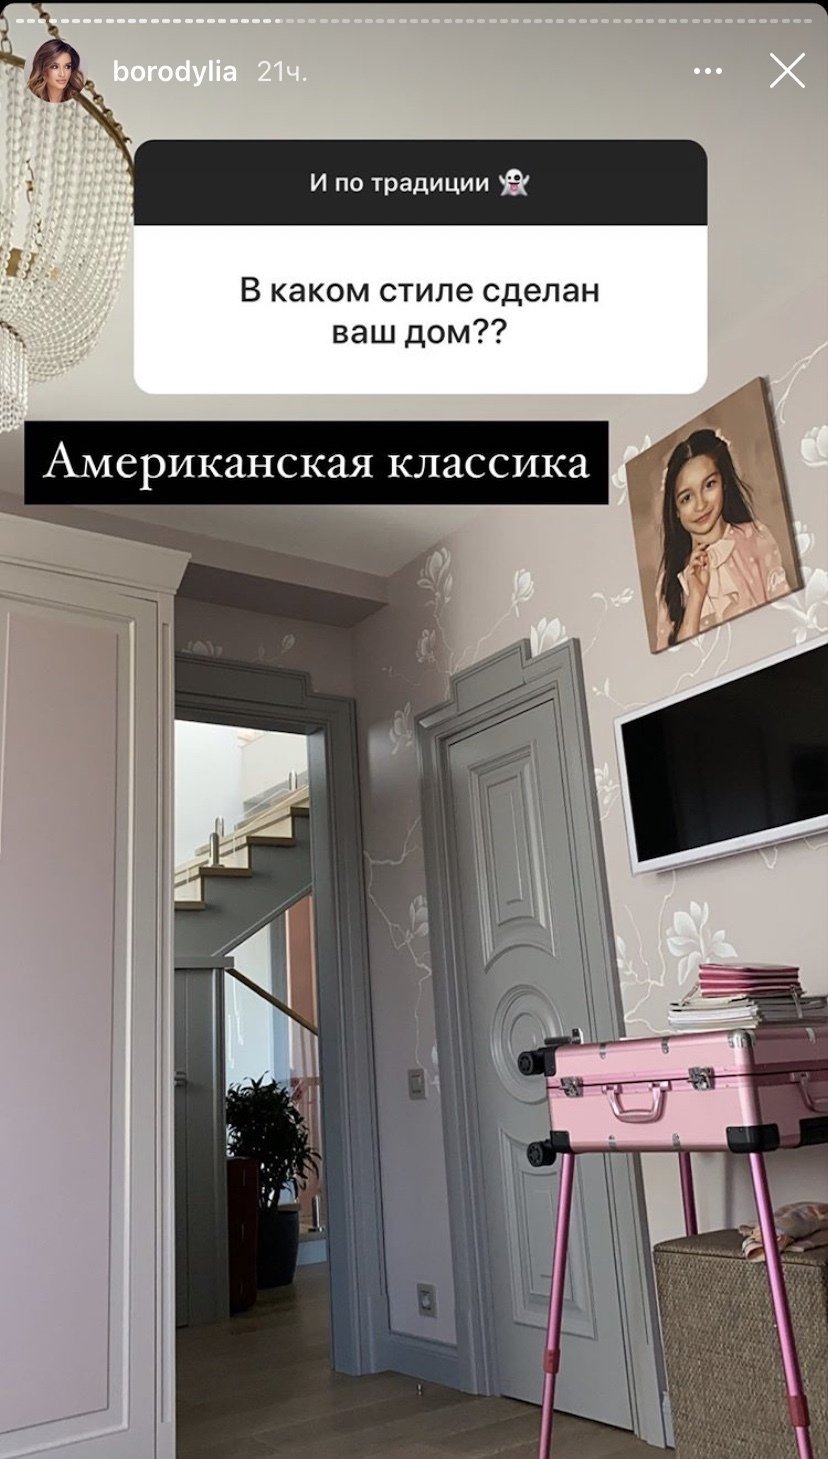 Спальня Ксении Бородиной